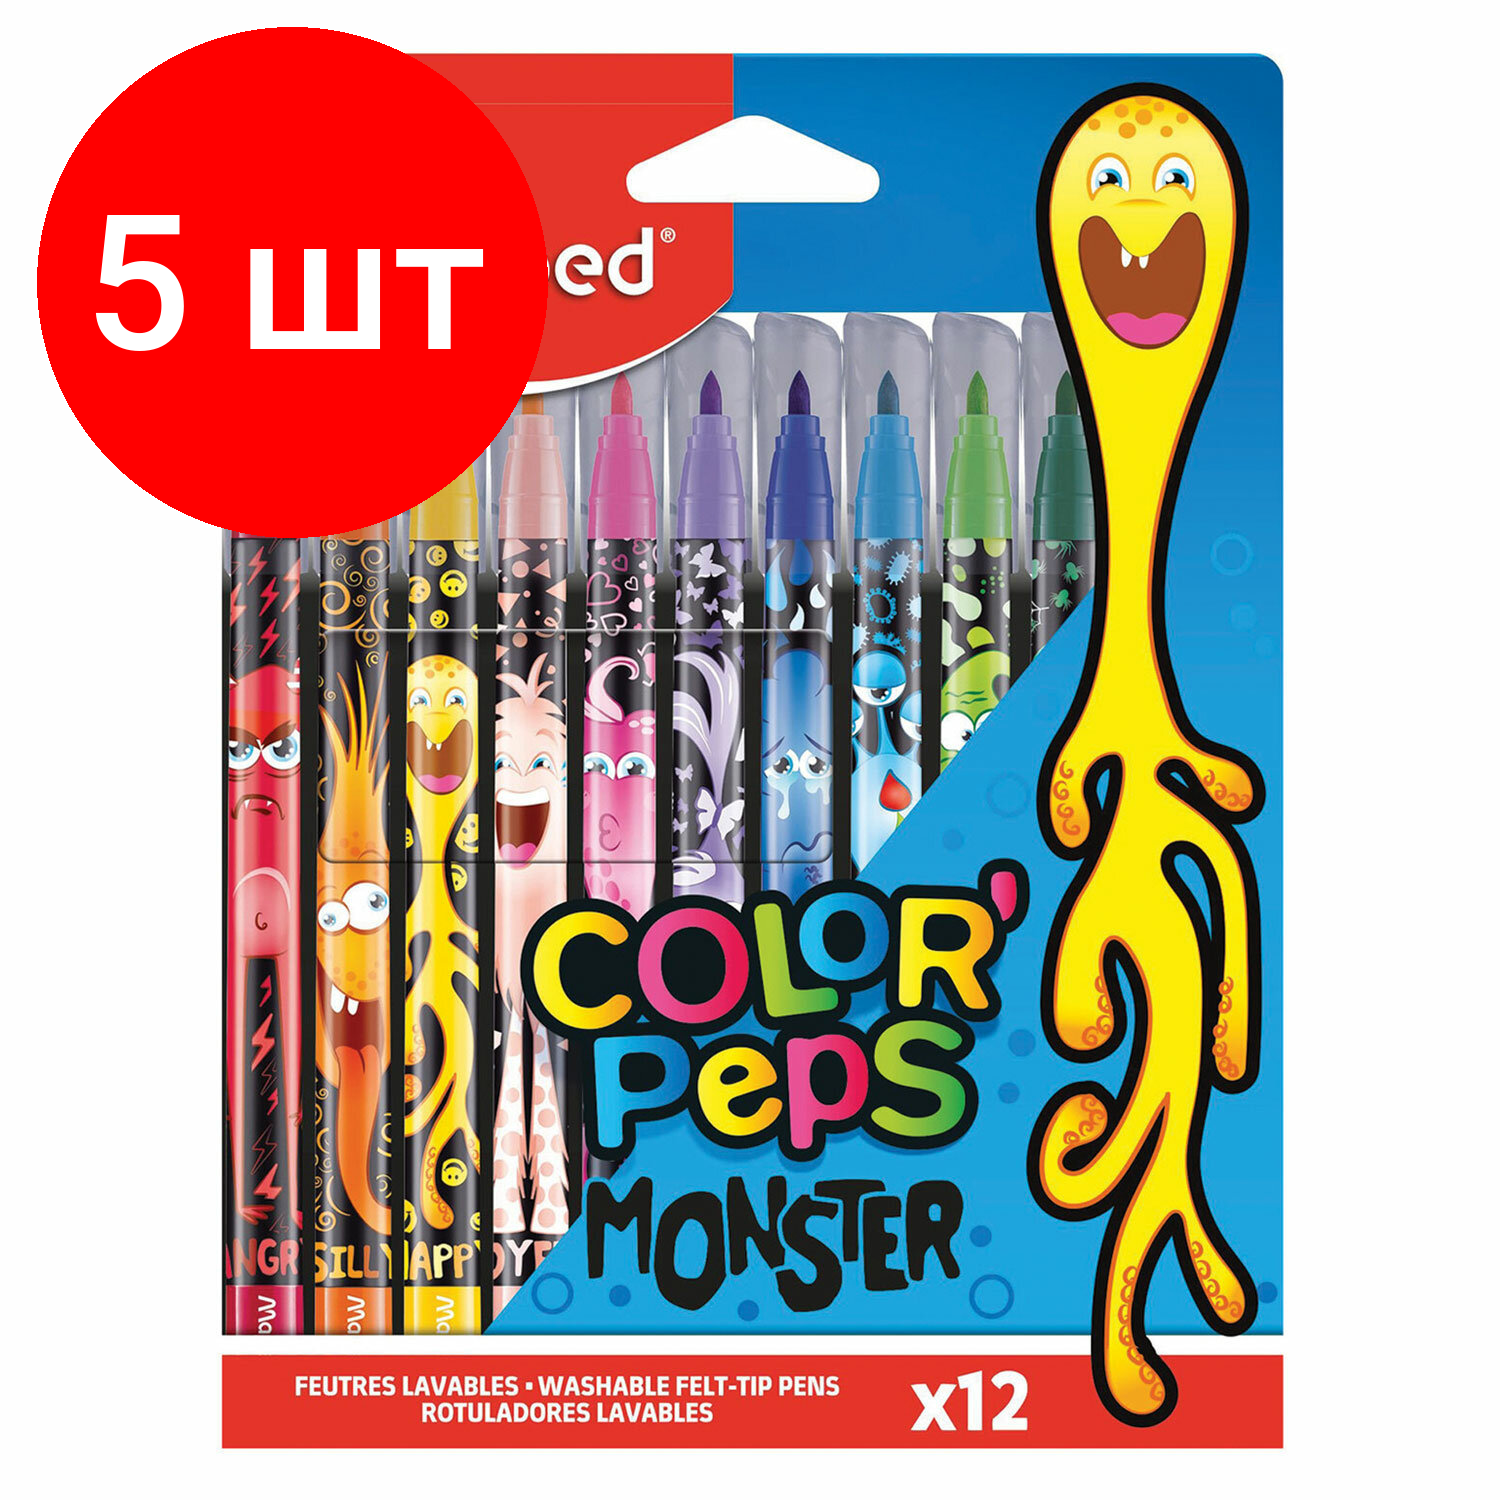 Комплект 5 шт, Фломастеры MAPED COLOR PEP'S Monster, 12 цветов, смываемые, вентилируемый колпачок, 845400